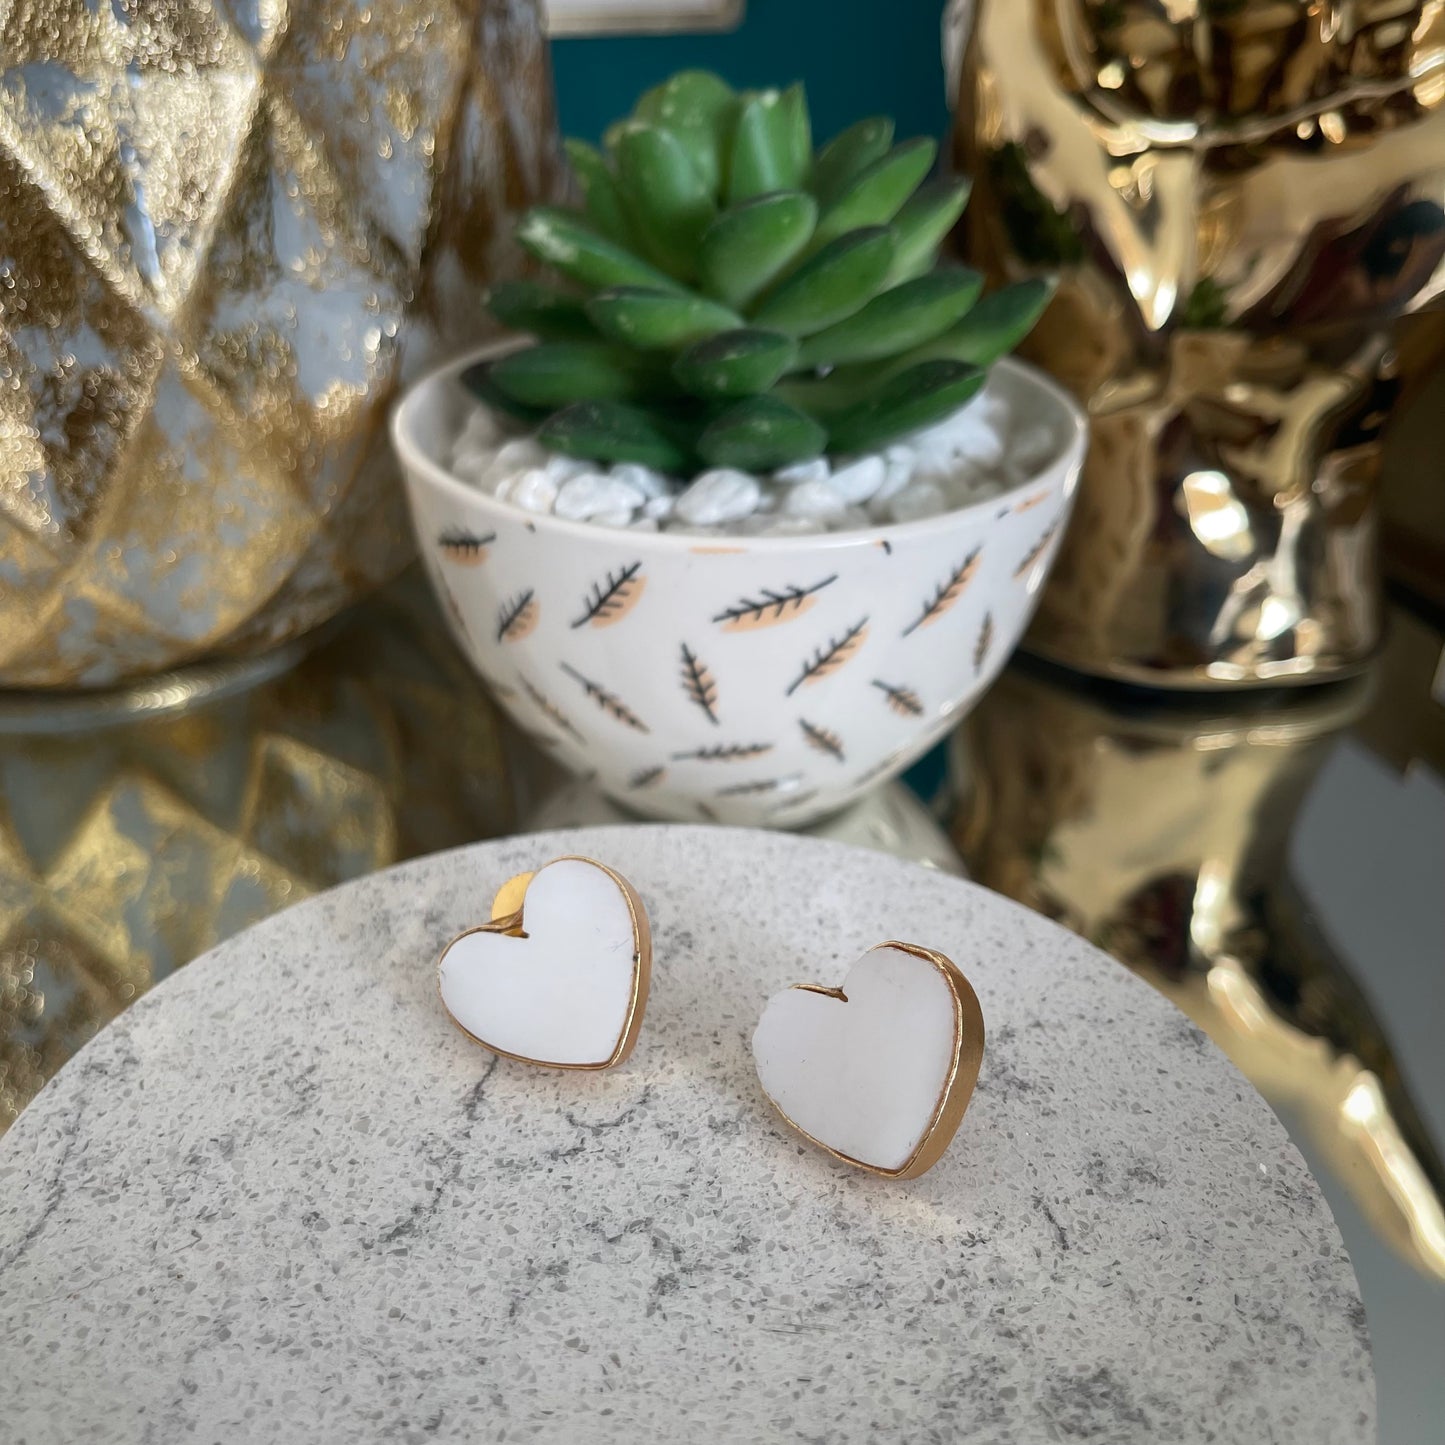 Lovva- White Heart earrings